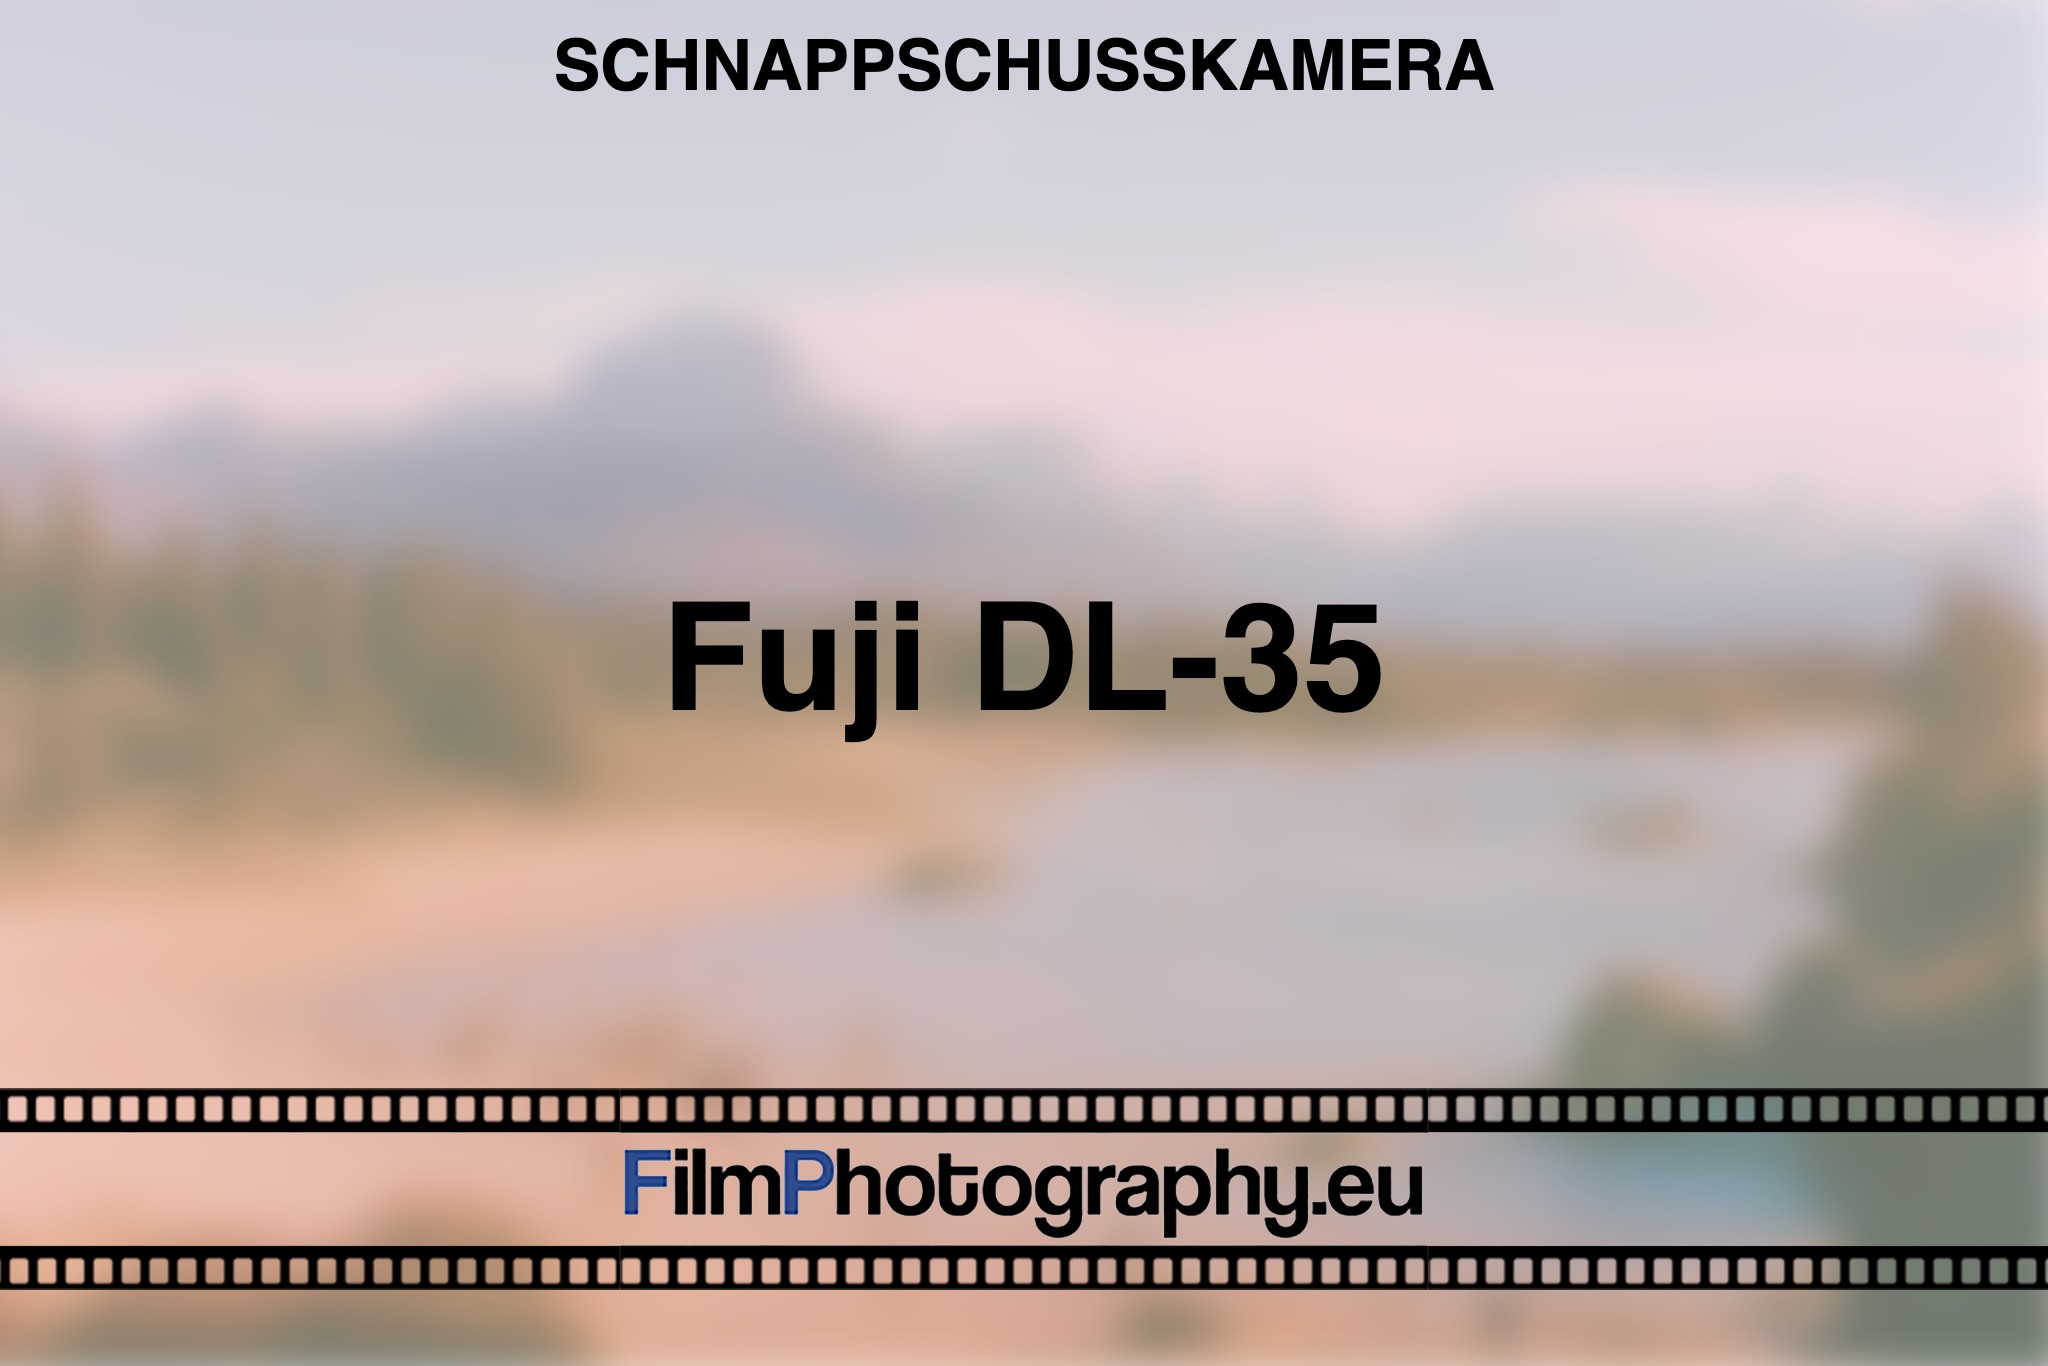 fuji-dl-35-schnappschusskamera-bnv